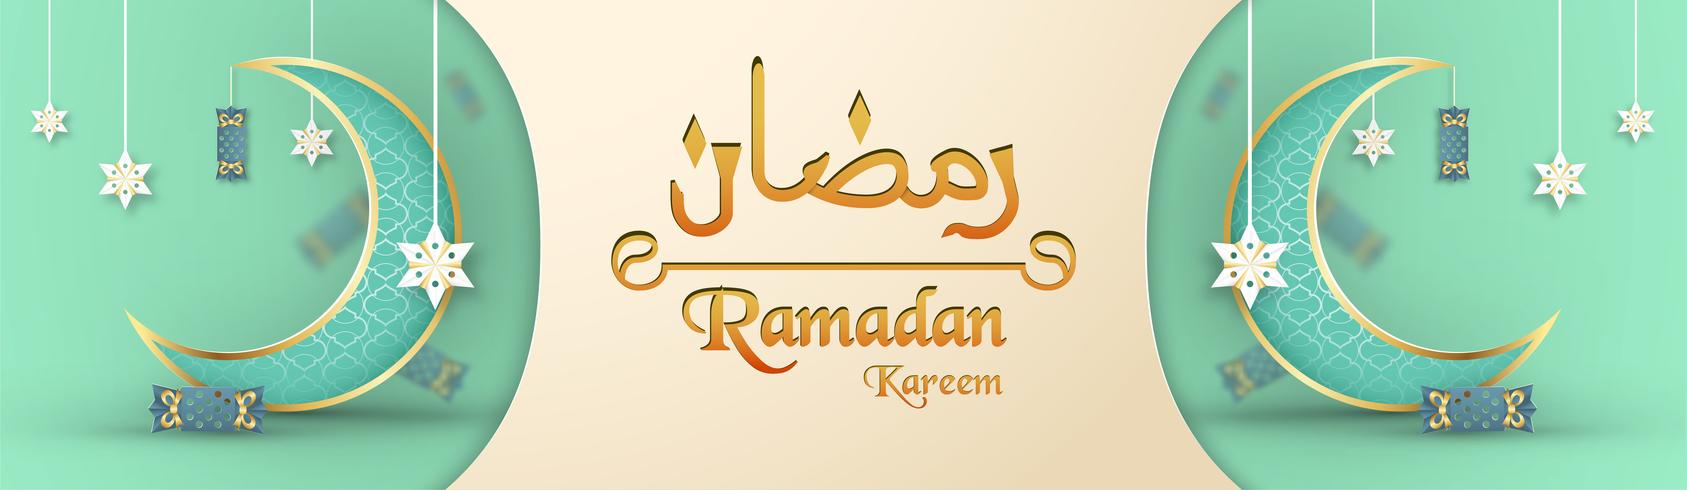 Plantilla para Ramadan Kareem en color verde y dorado. Diseño del ejemplo del vector 3D en el corte y el arte del papel para la tarjeta de felicitación islámica, invitación, cubierta de libro, folleto, bandera del web, anuncio.